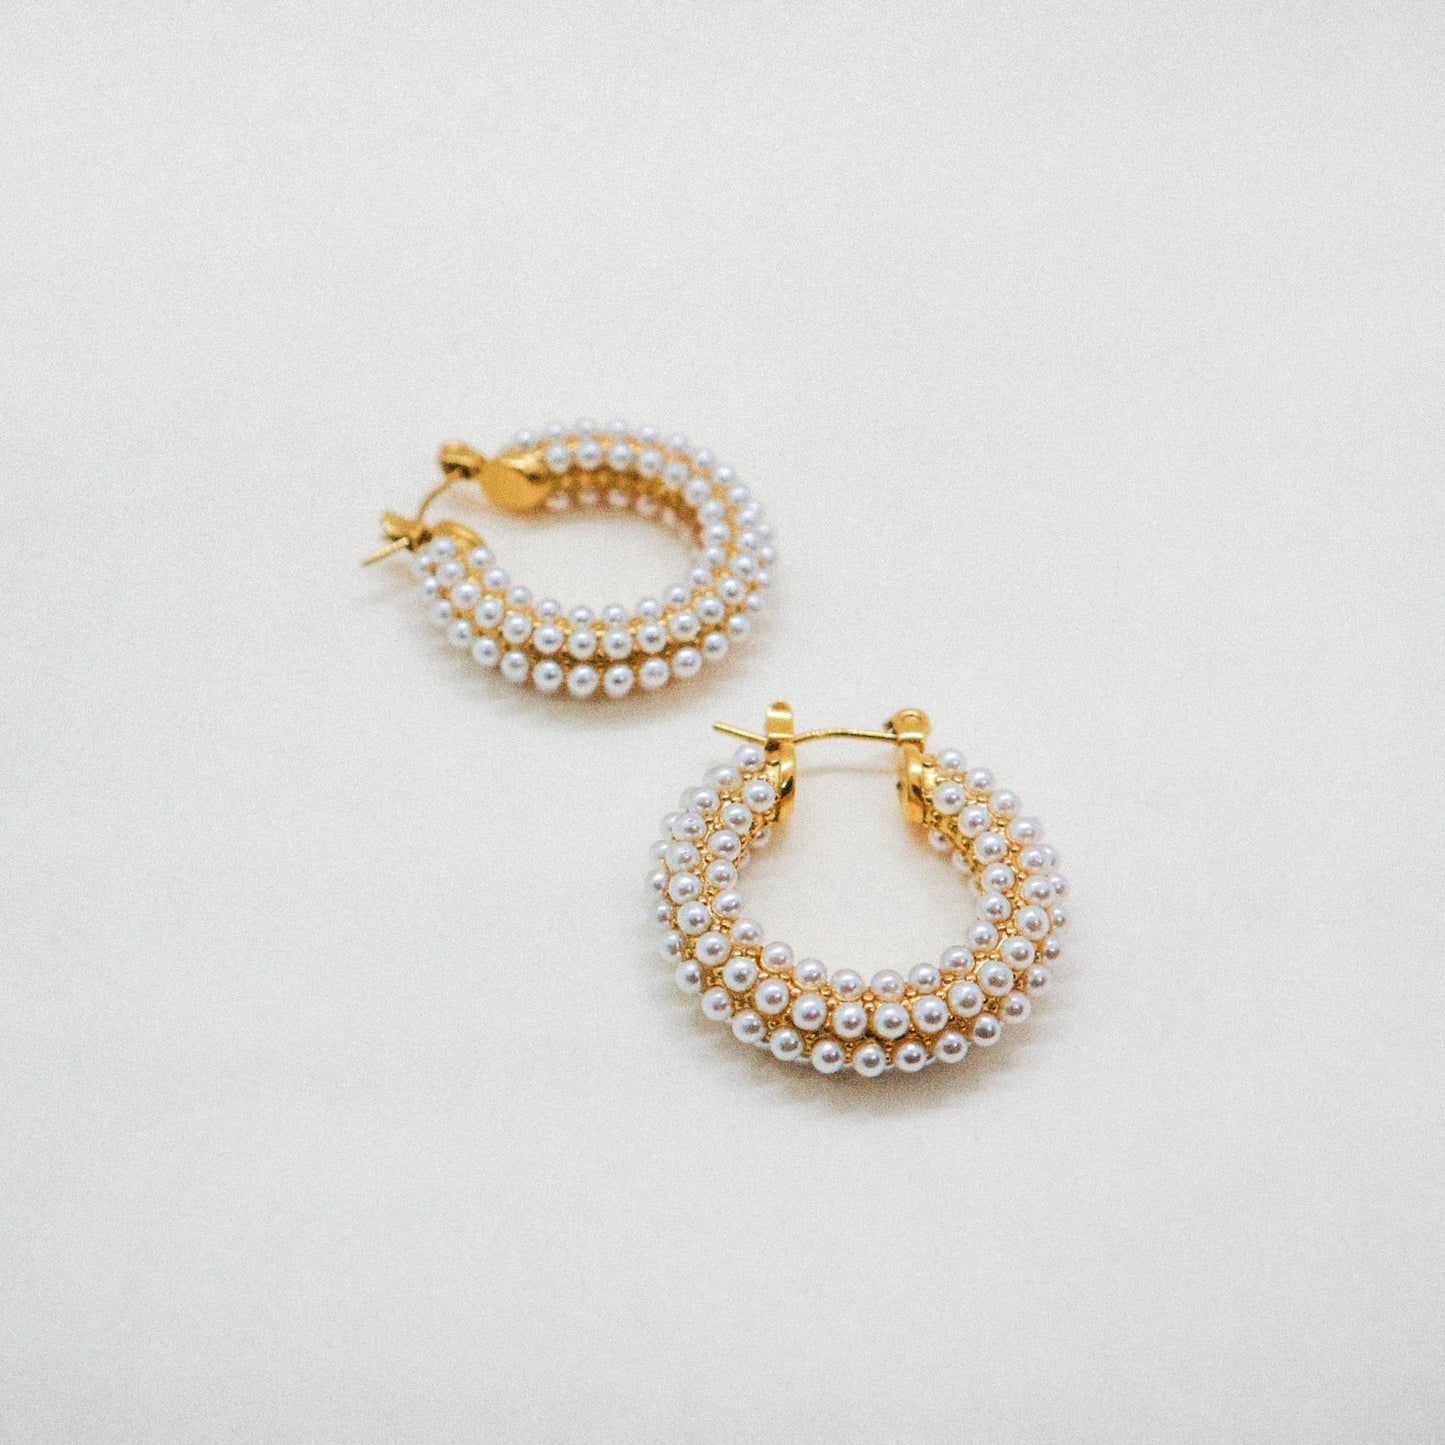 The pearl earrings